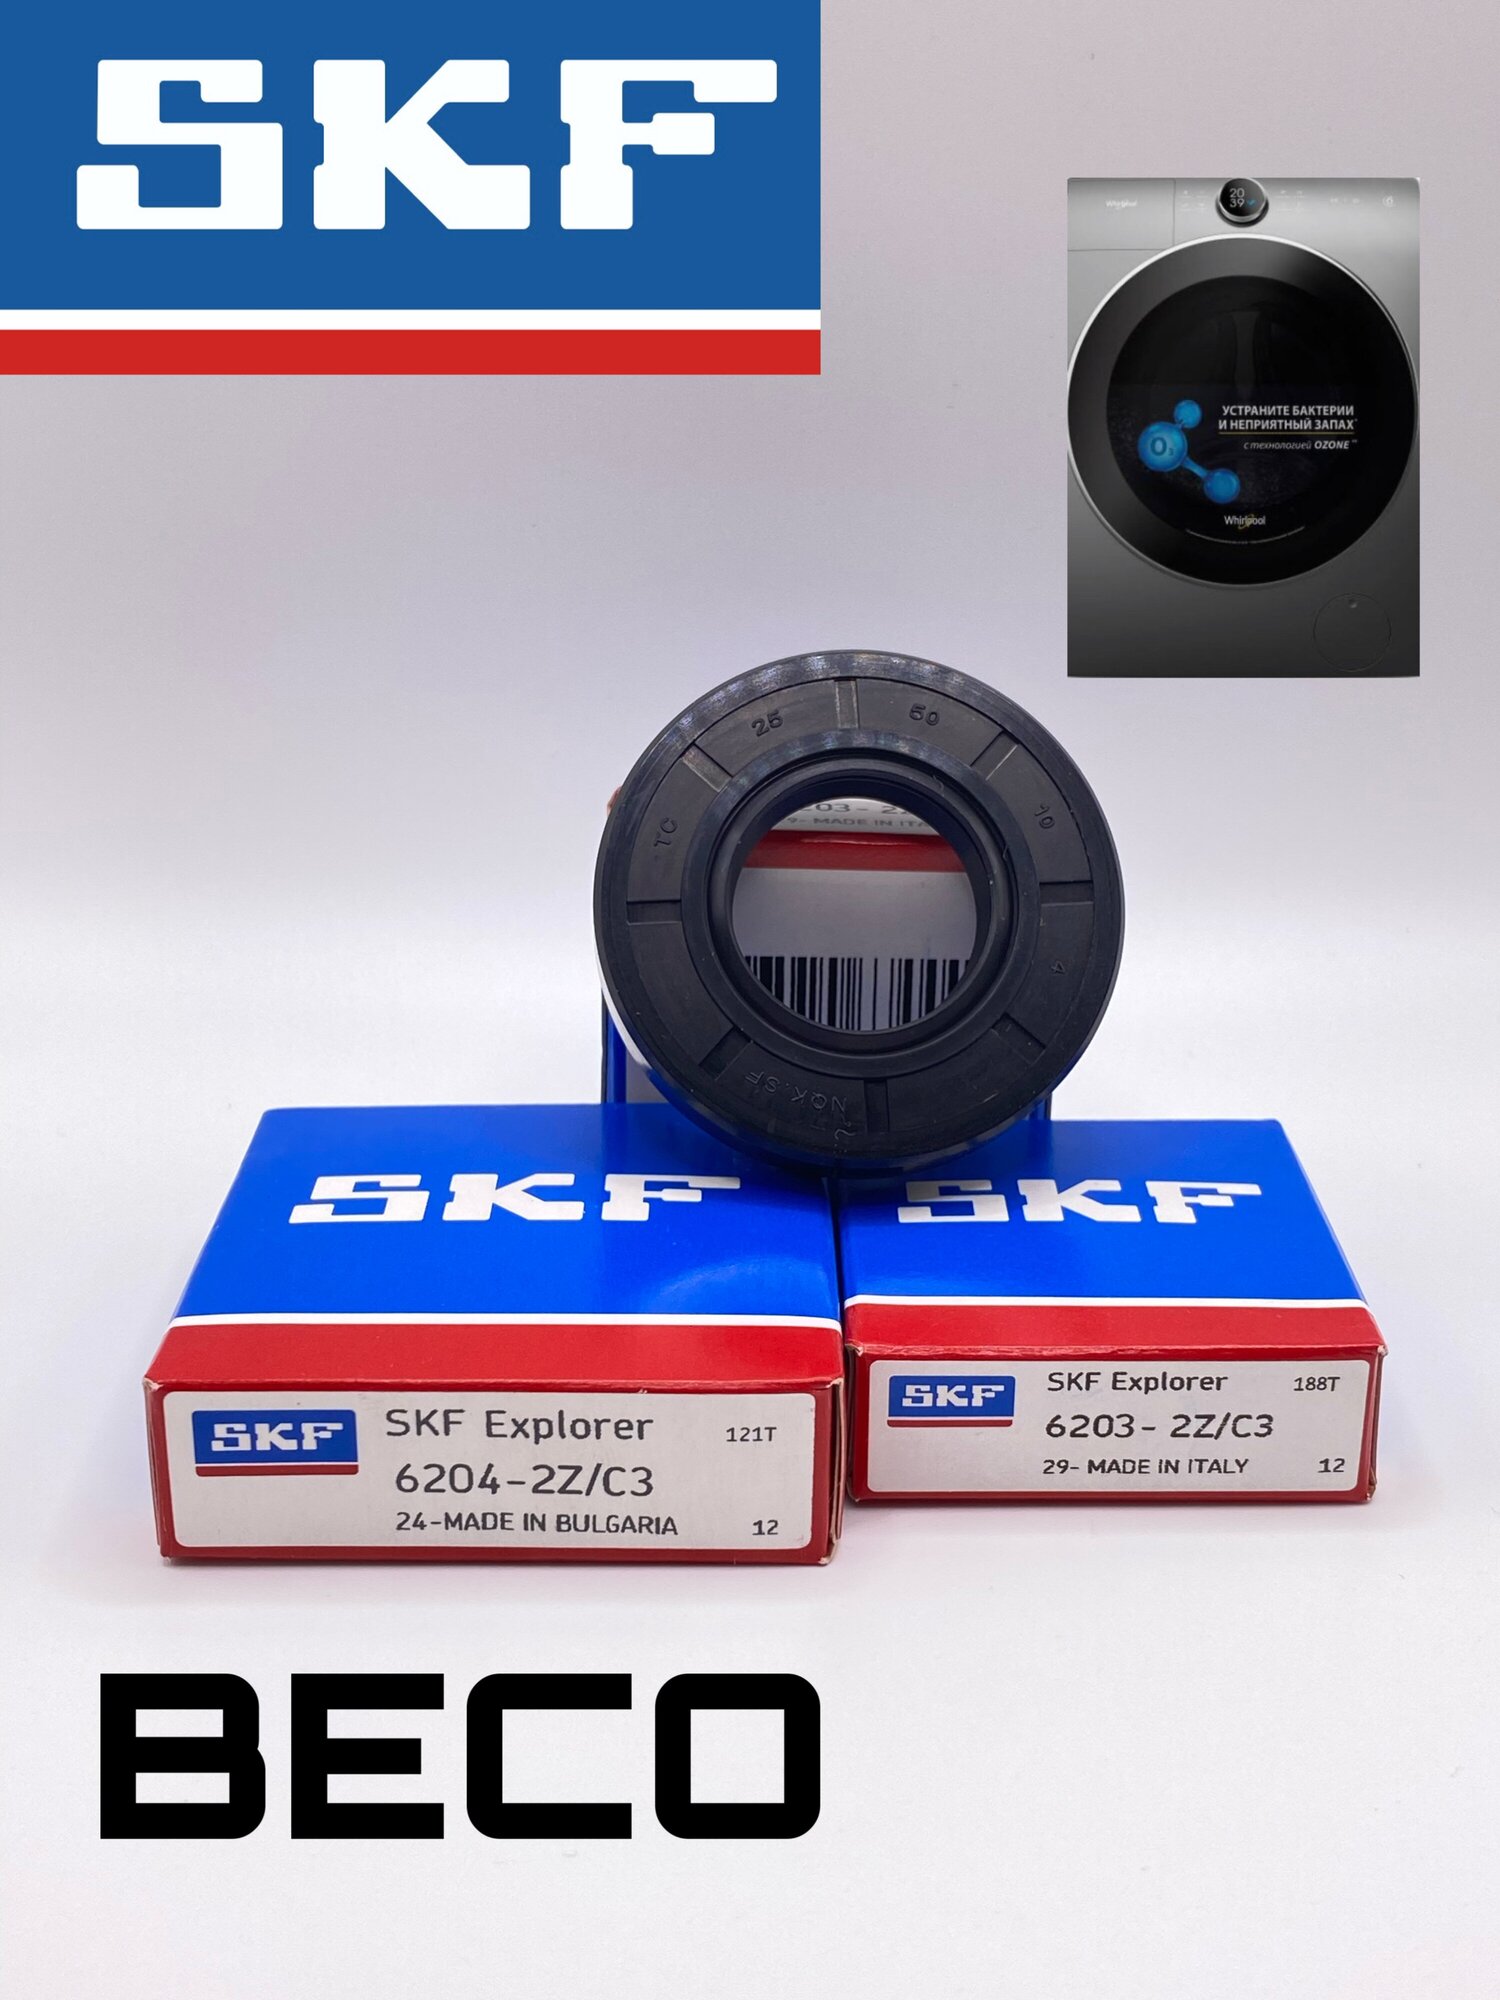 Ремкомплект бака стиральной машины Beko LG /Подшипники SKF 6203 6204 оригинал, сальник 25x50x10 - фотография № 2